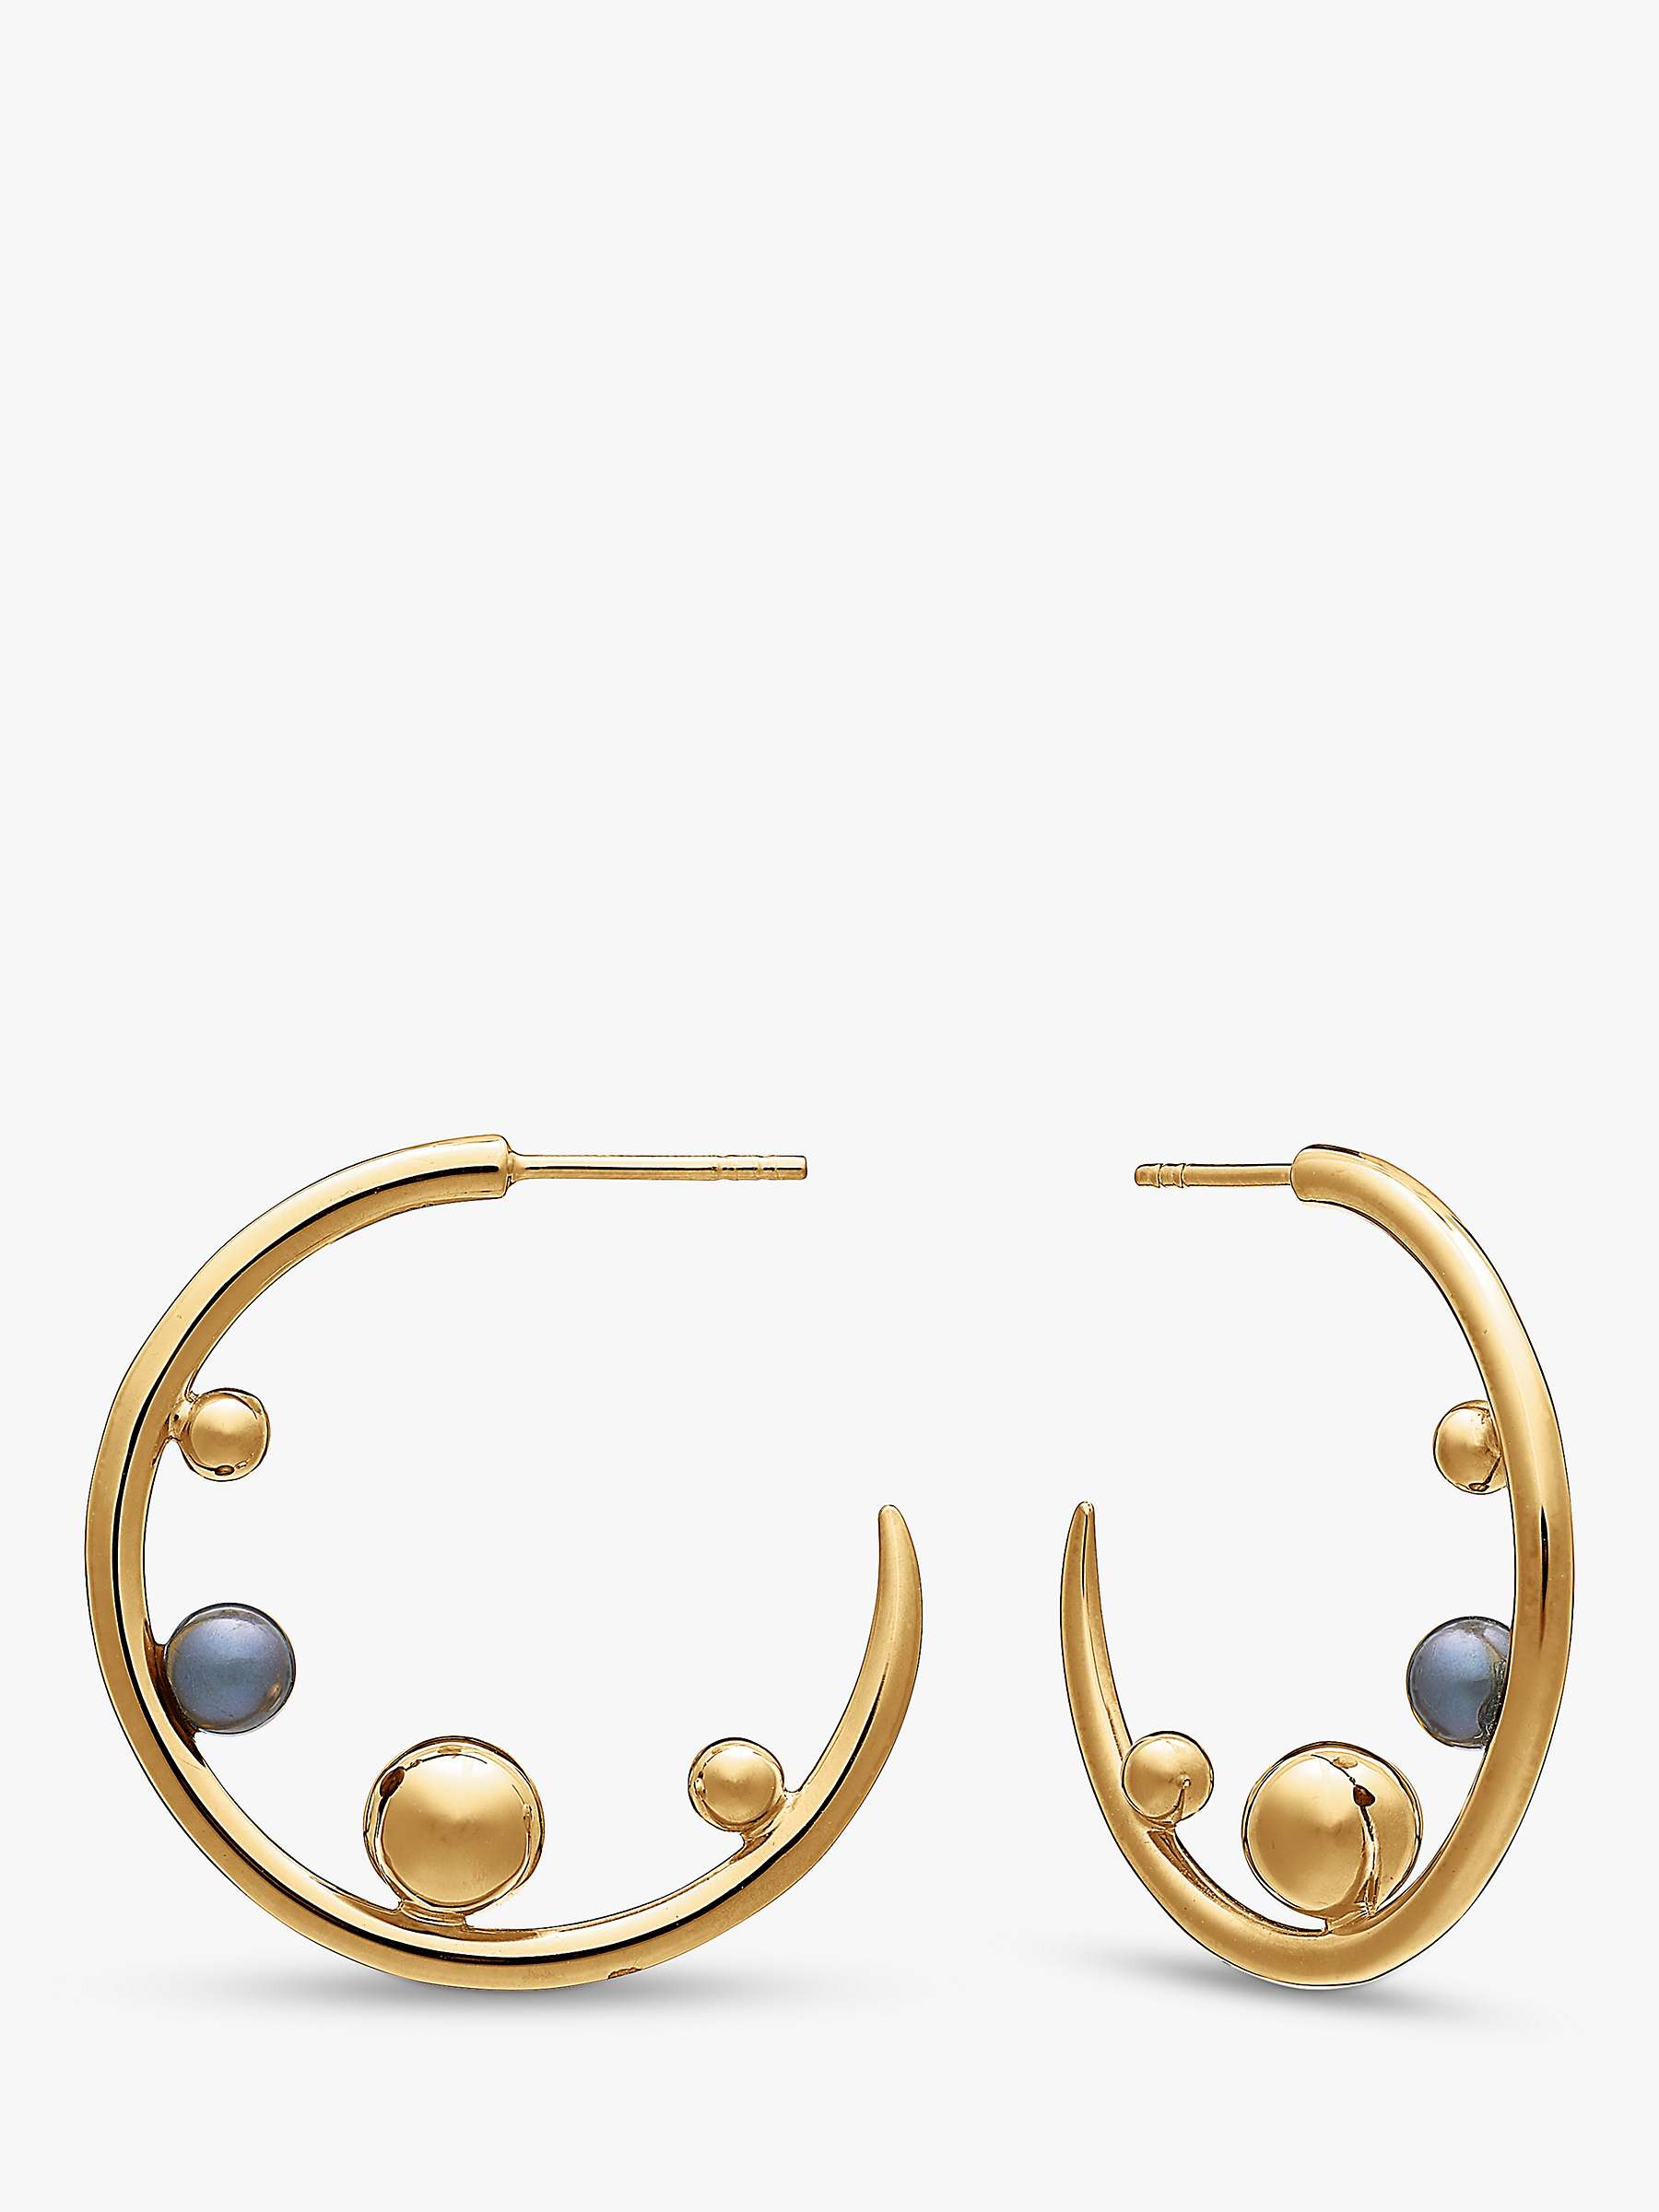 Buy Rachel Jackson London Statement Stellar Black Pearl Hoop Earrings, Gold Online at johnlewis.com